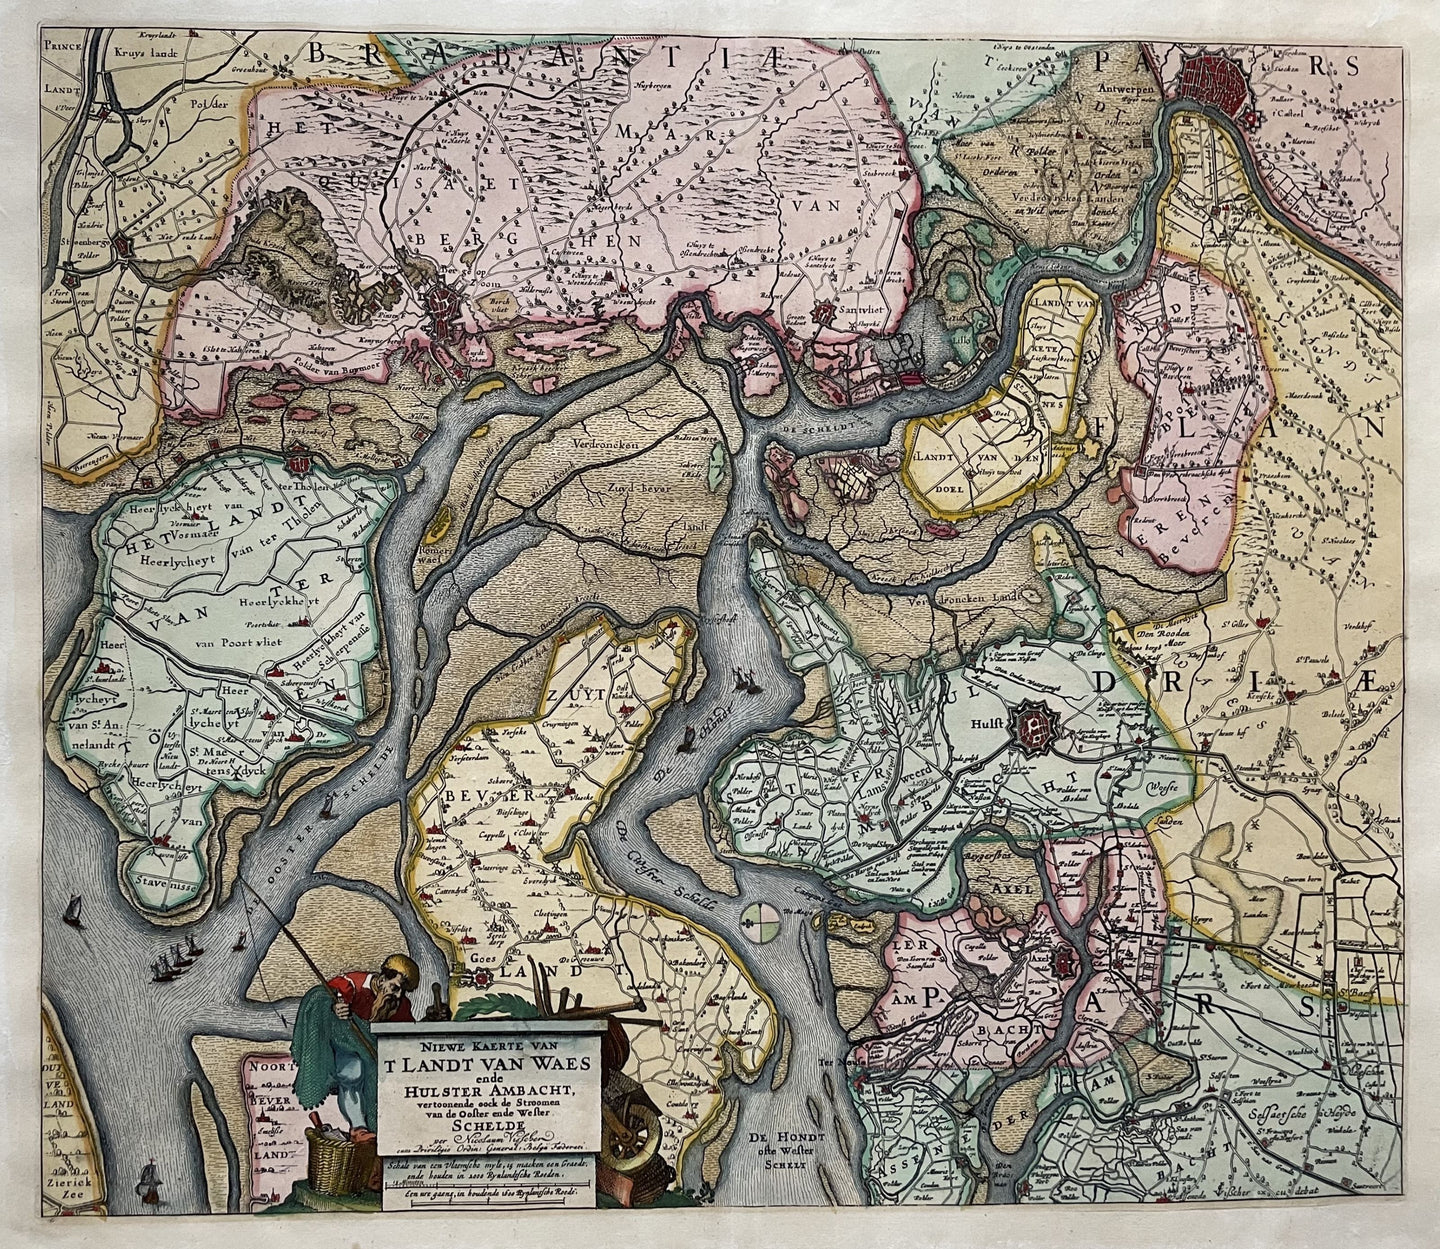 België Waasland / Nederland Hulster Ambacht Schelde Oosterschelde Westerschelde - CJ Visscher / Nicolaes Visscher I - circa 1670